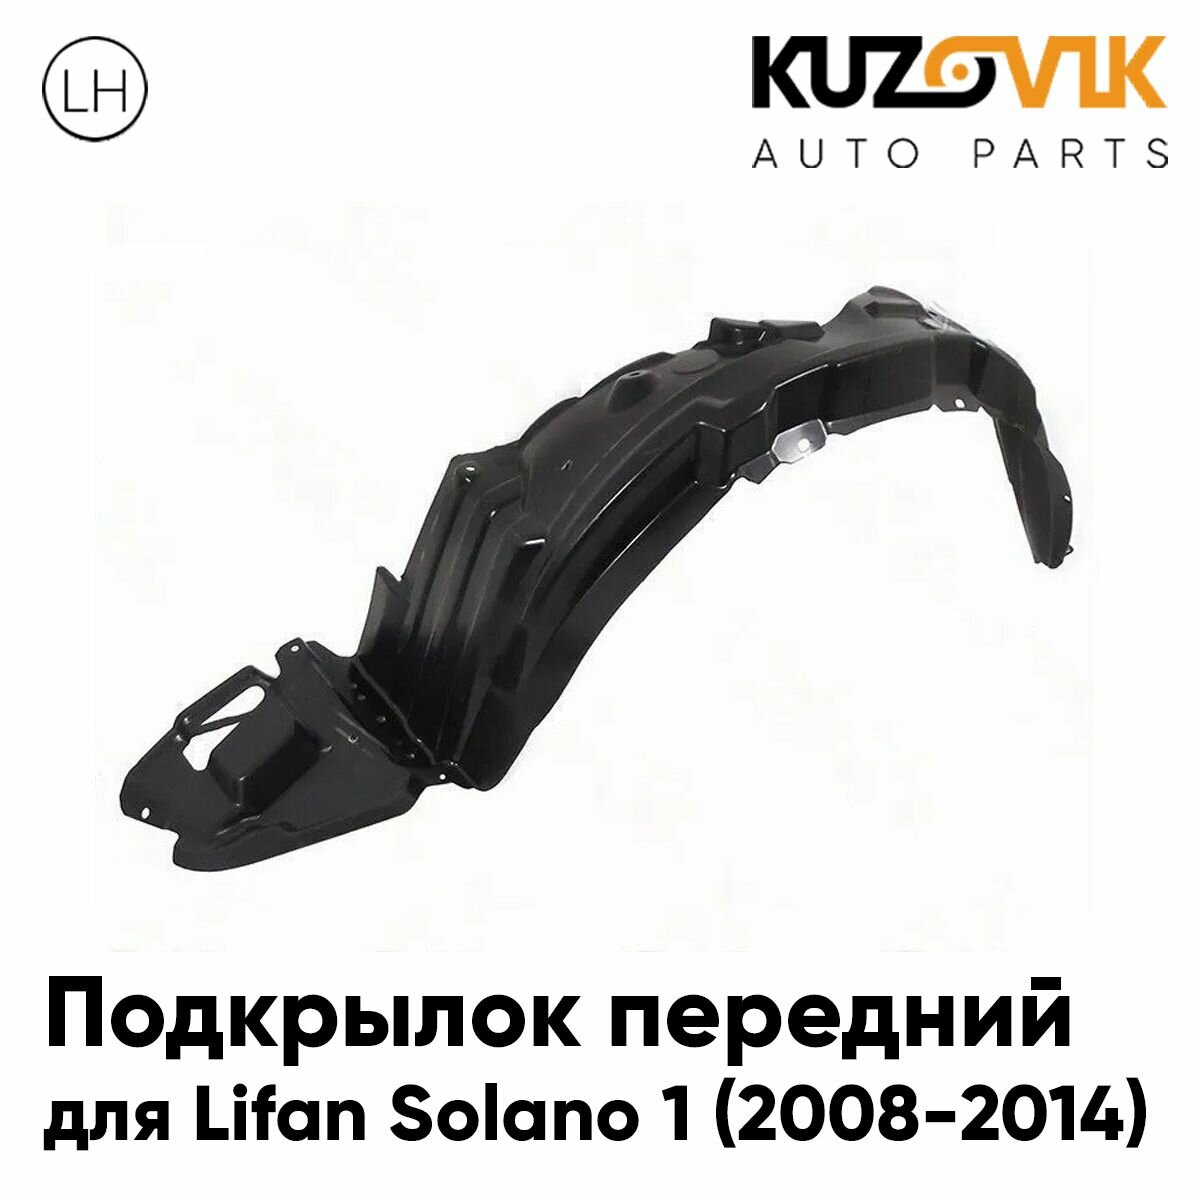 Подкрылок передний для Лифан Солано Lifan Solano 1 (2008-2014) левый